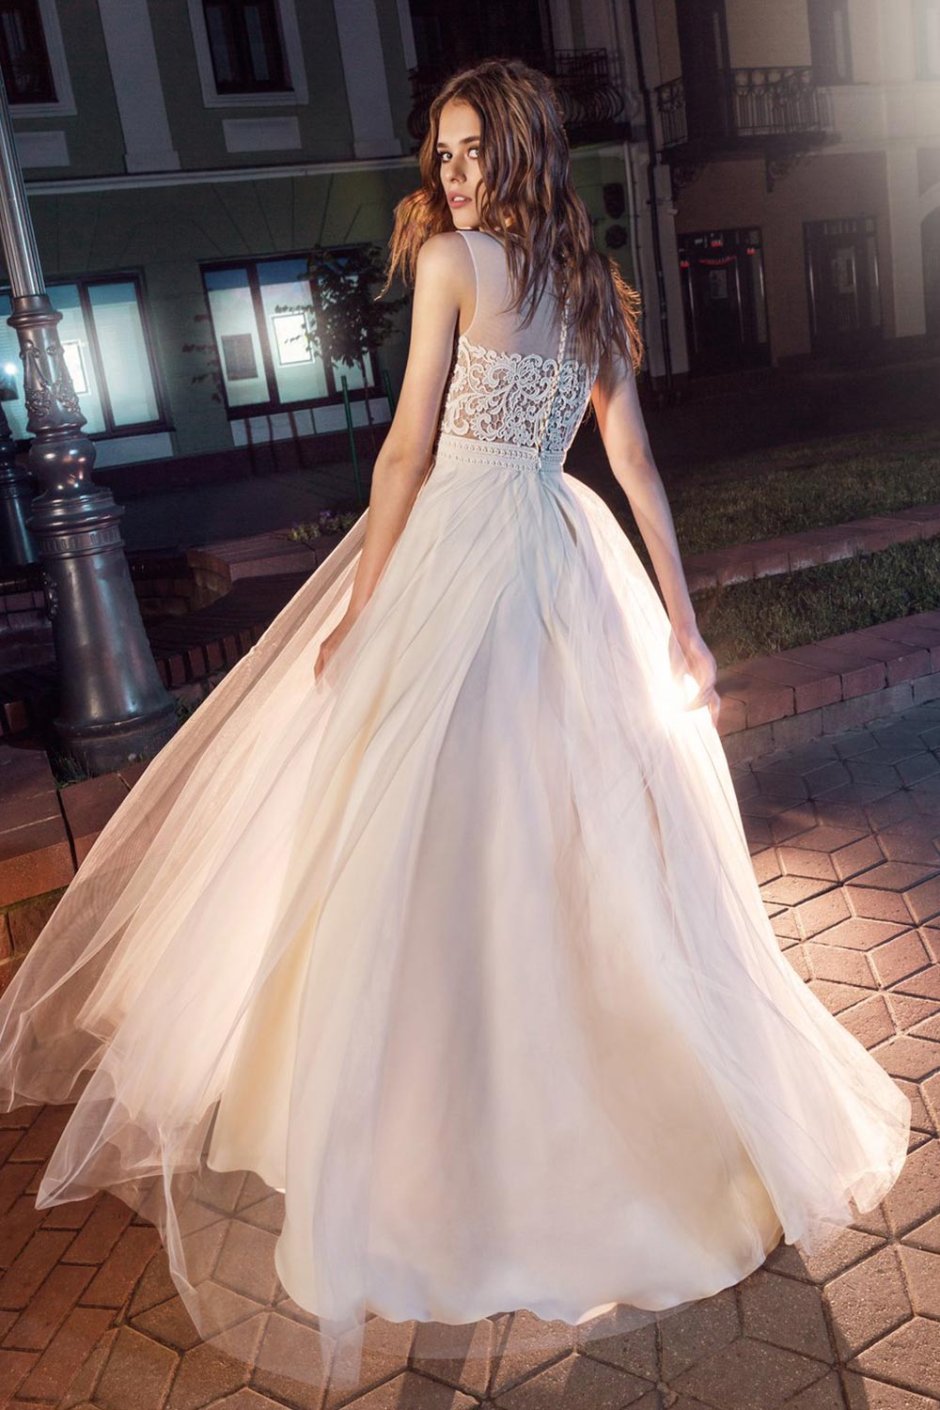 Кармелита в свадебном платье